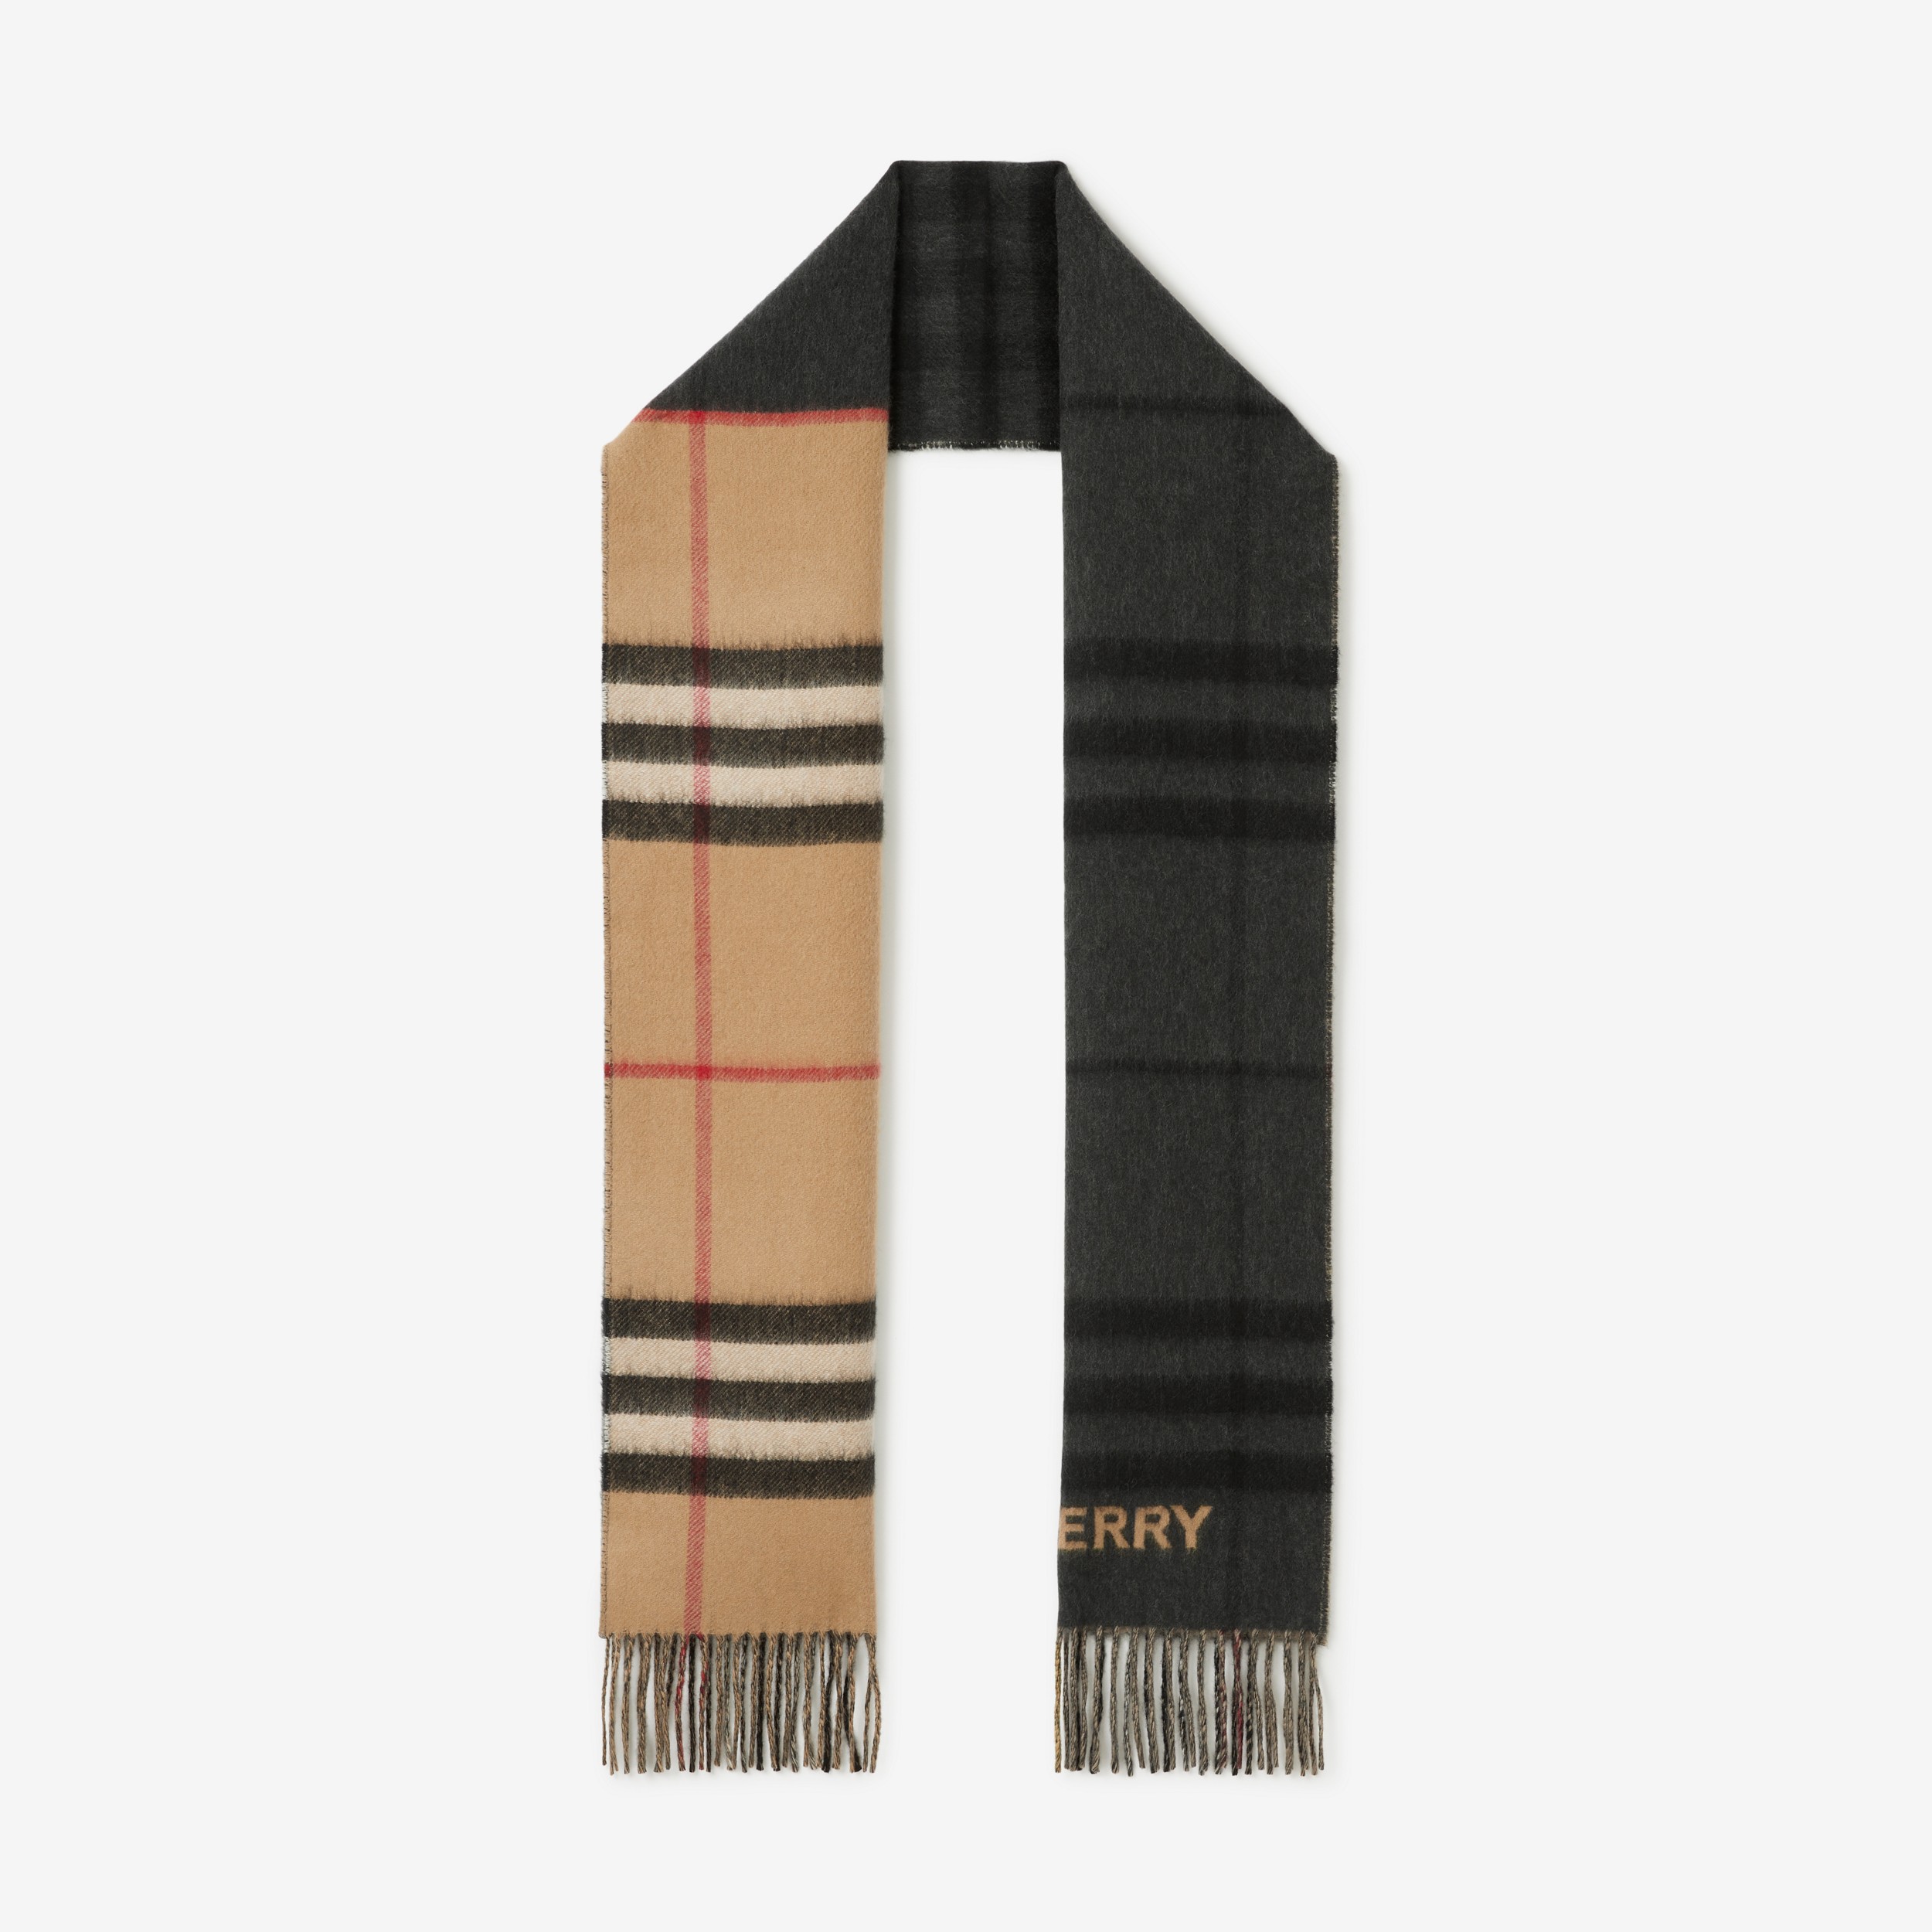 Sciarpa in cashmere con motivi tartan a contrasto (Beige Archivio/nero) | Sito ufficiale Burberry® - 1